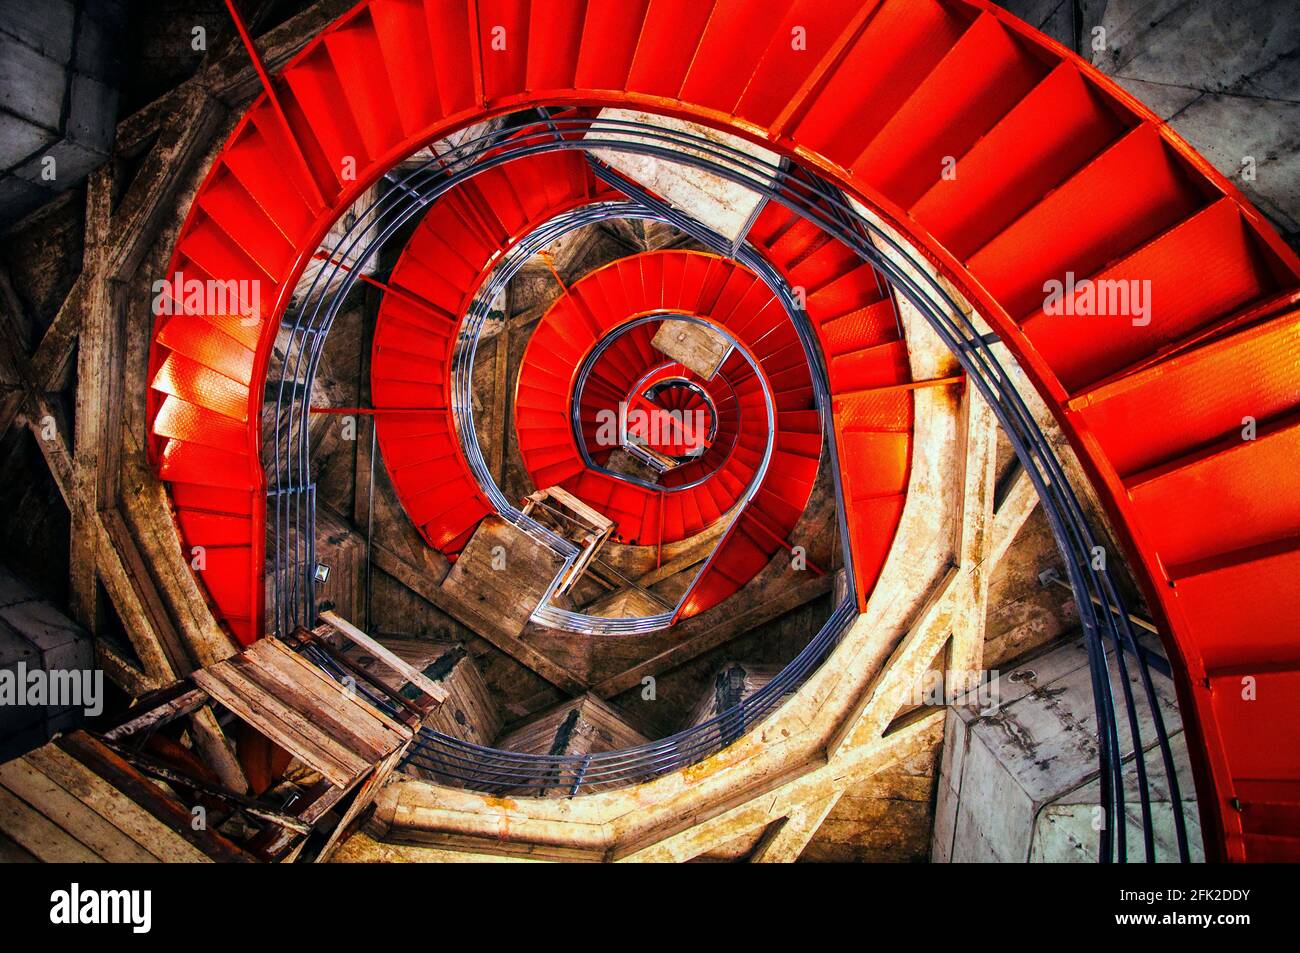 Vue intérieure des escaliers rouges en spirale. Manizales, Caldas, Colombie. Banque D'Images